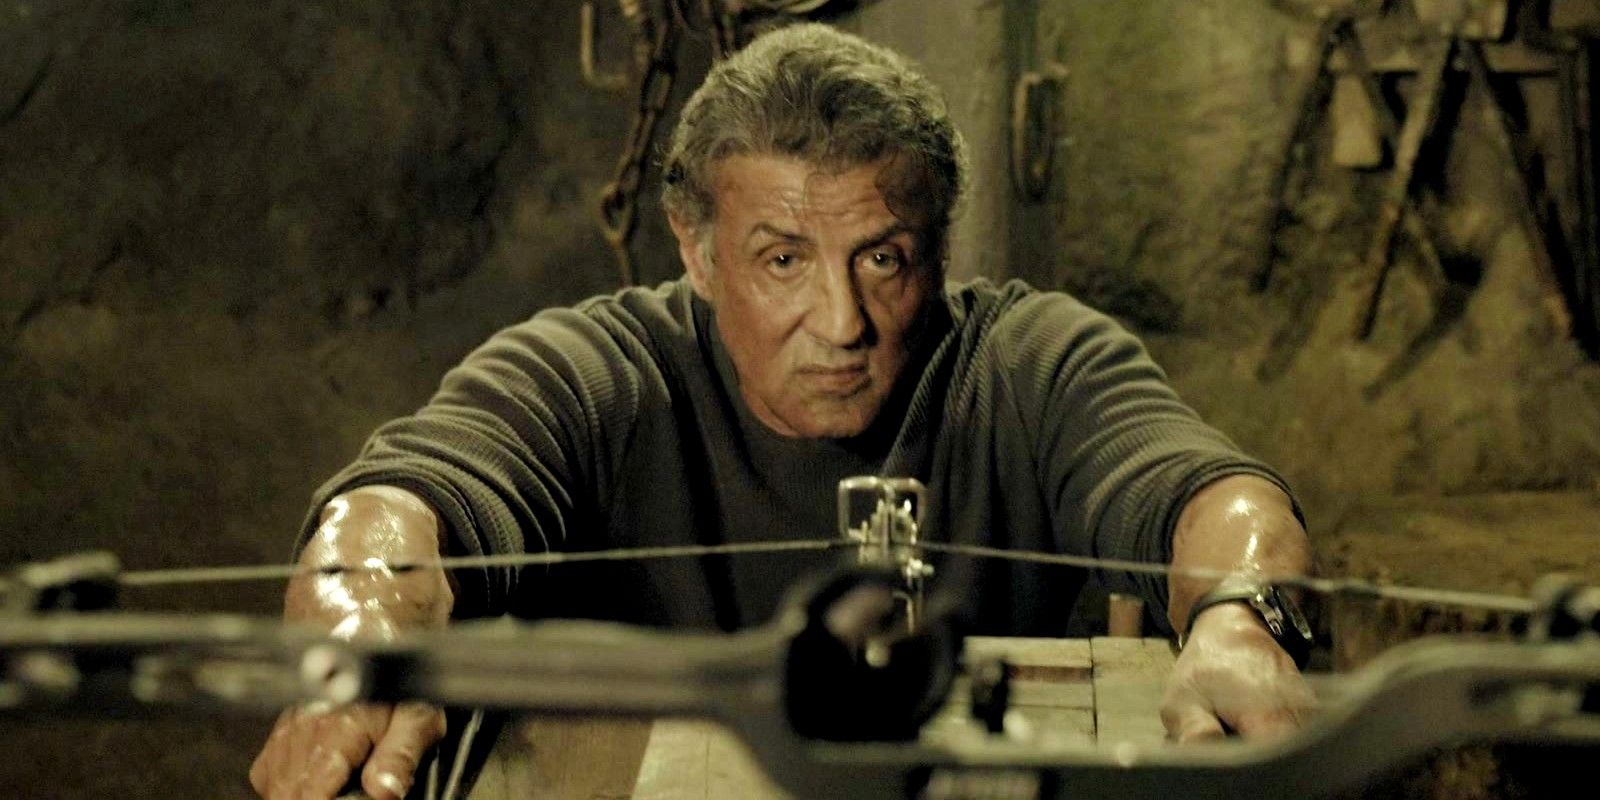 “¿Contra qué estoy luchando? ¿Artritis?”  Rambo 6 posibilidades de obtener una respuesta honesta de Sylvester Stallone